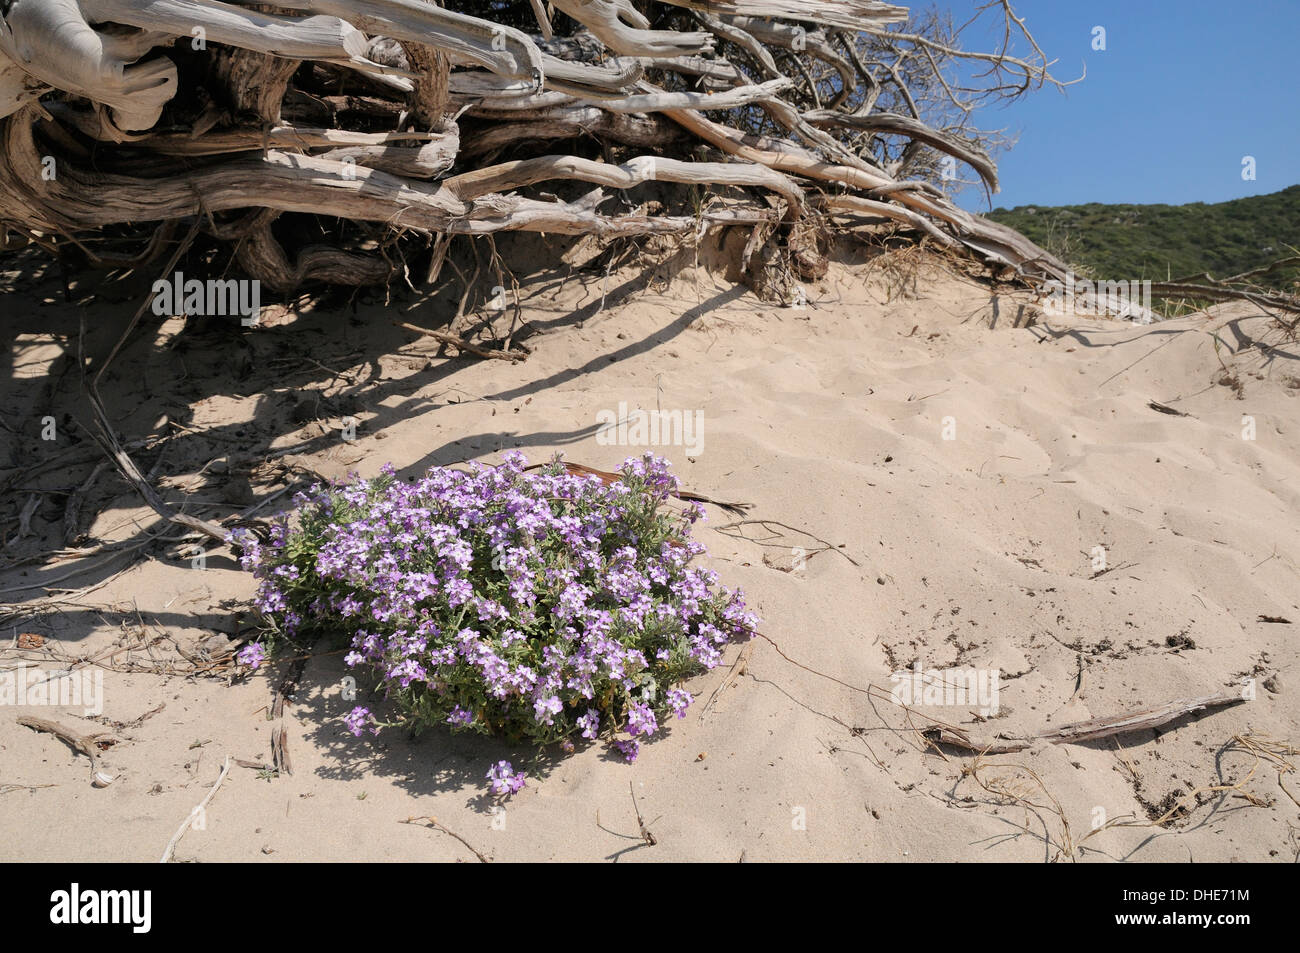 Meer-Rakete (Cakile Maritima) Büschel Blüte im Sand Düne hinter einem Strand in der Nähe von einem Haufen von Treibholz, Tizzano, Korsika, Frankreich. Stockfoto